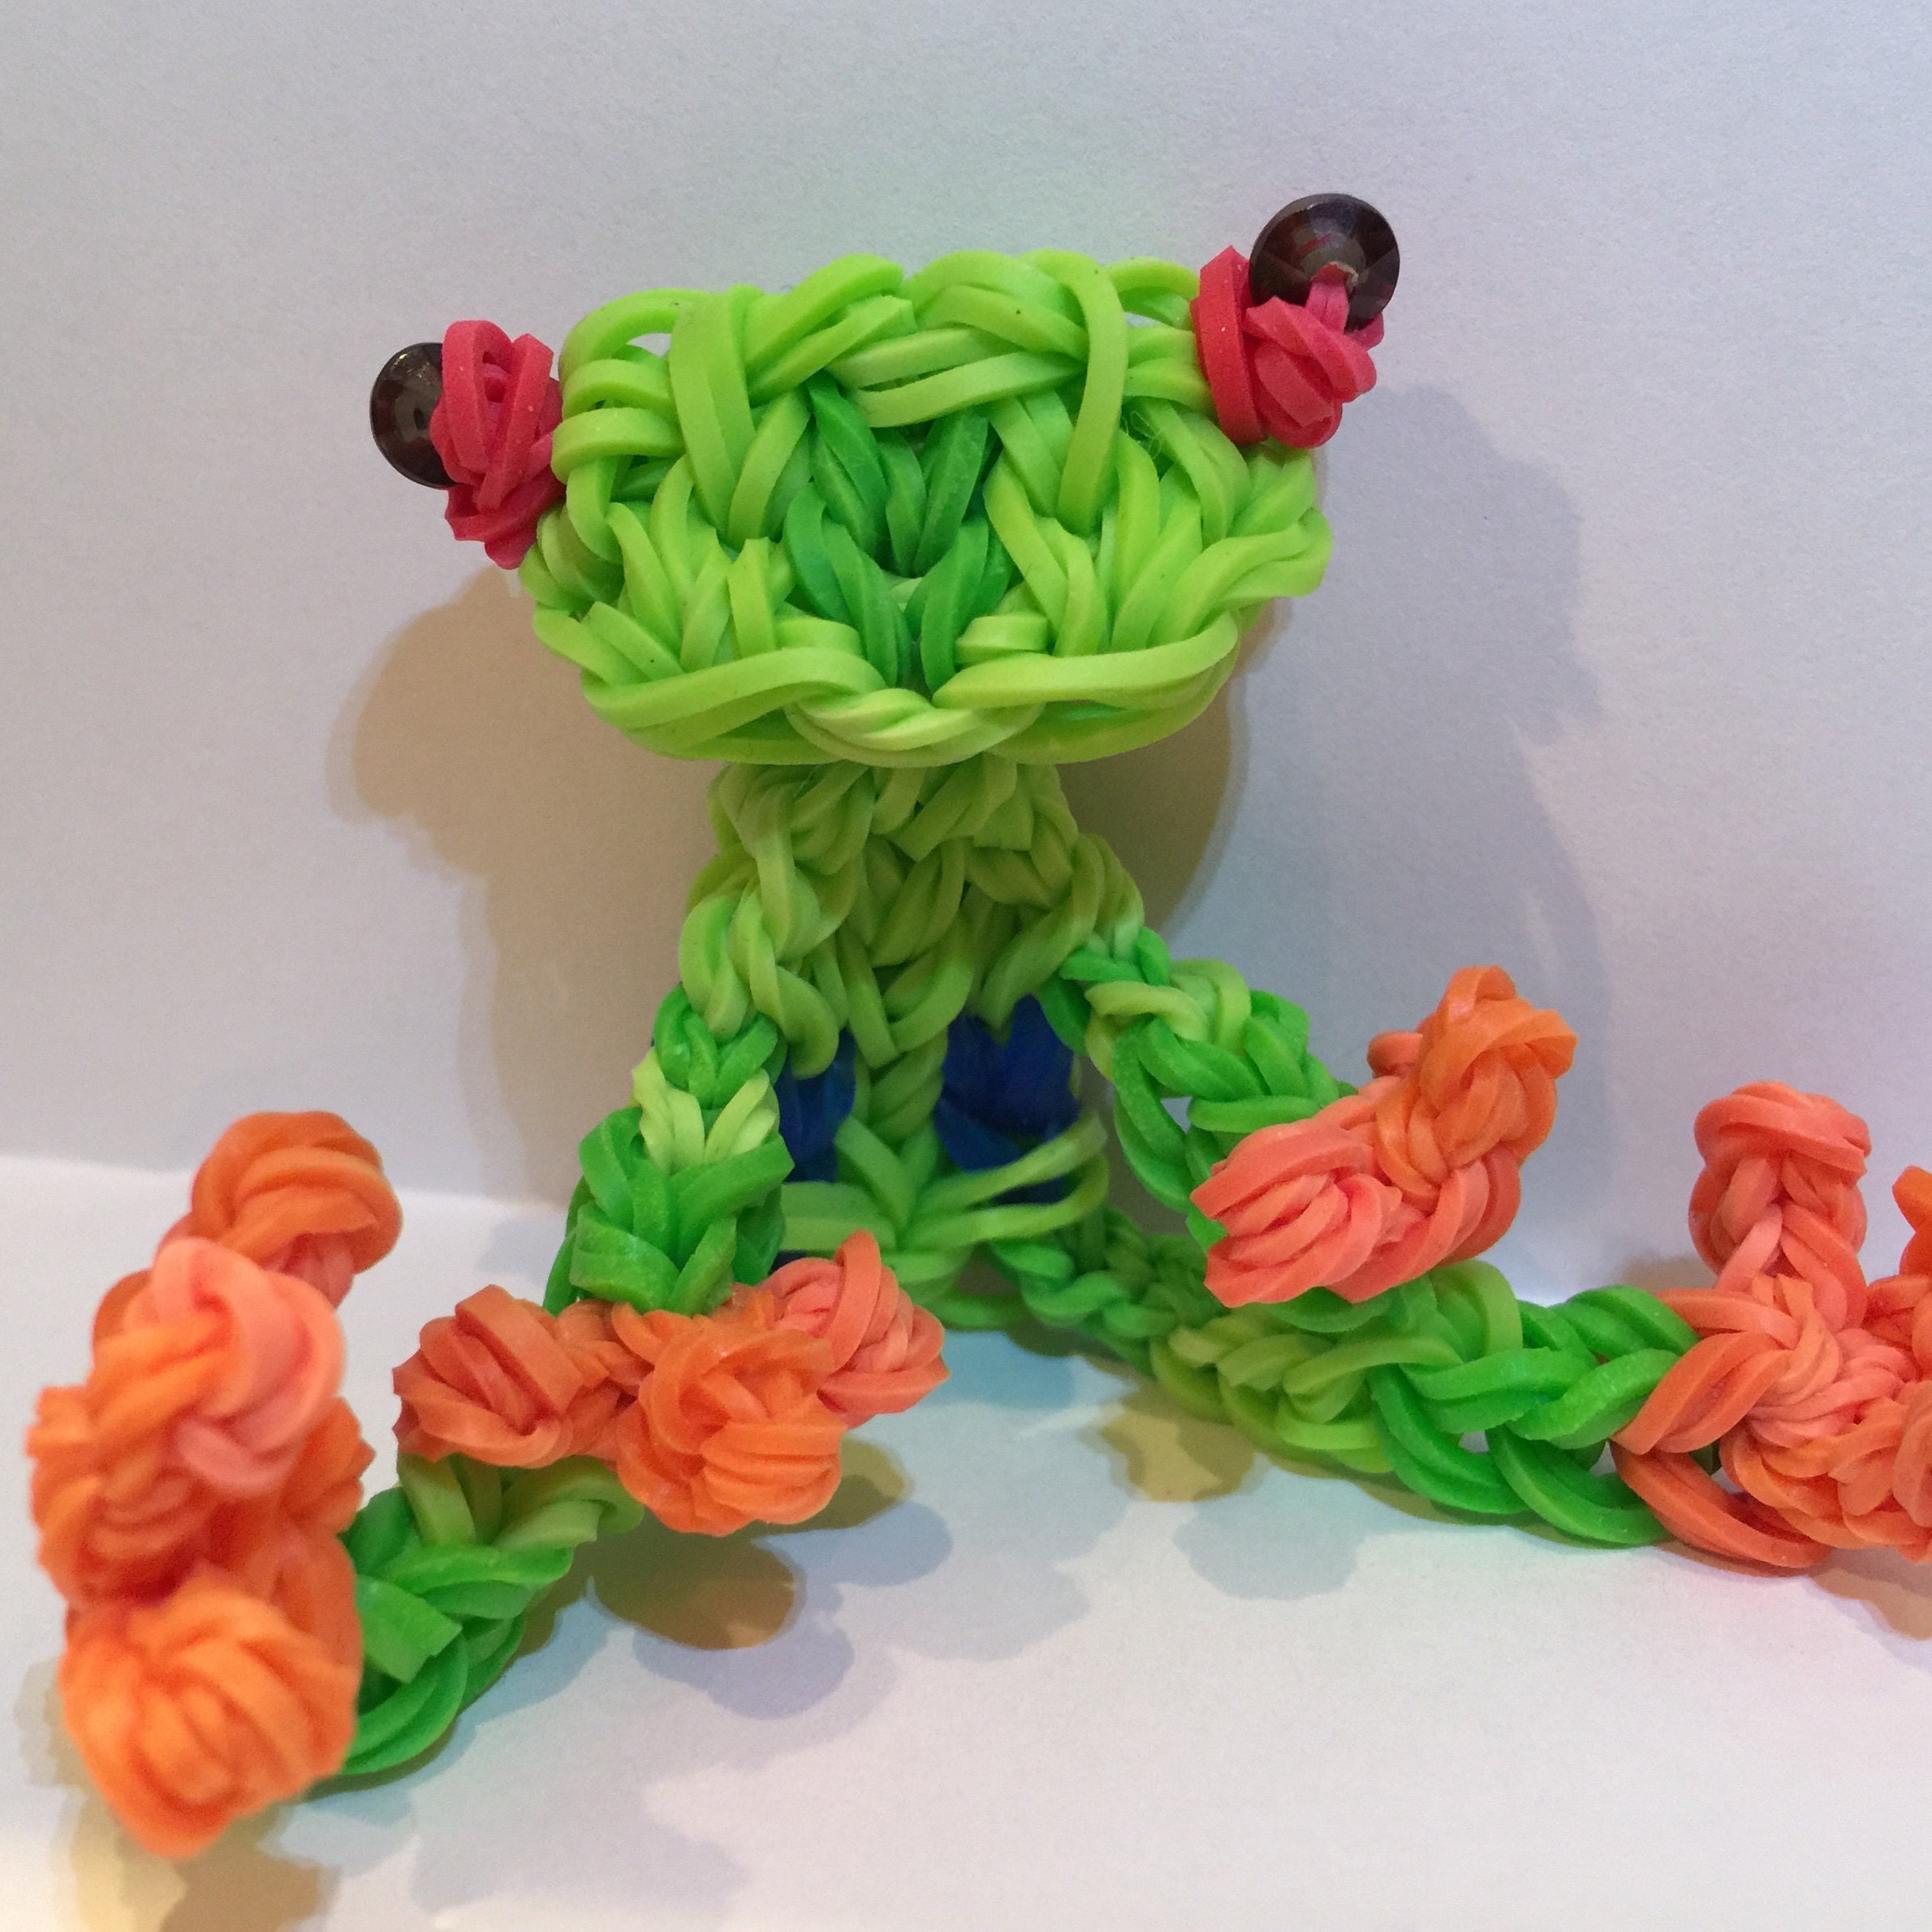 BBLNCreations - Loomigurumi figures made of Rainbow Loom rubber bands.